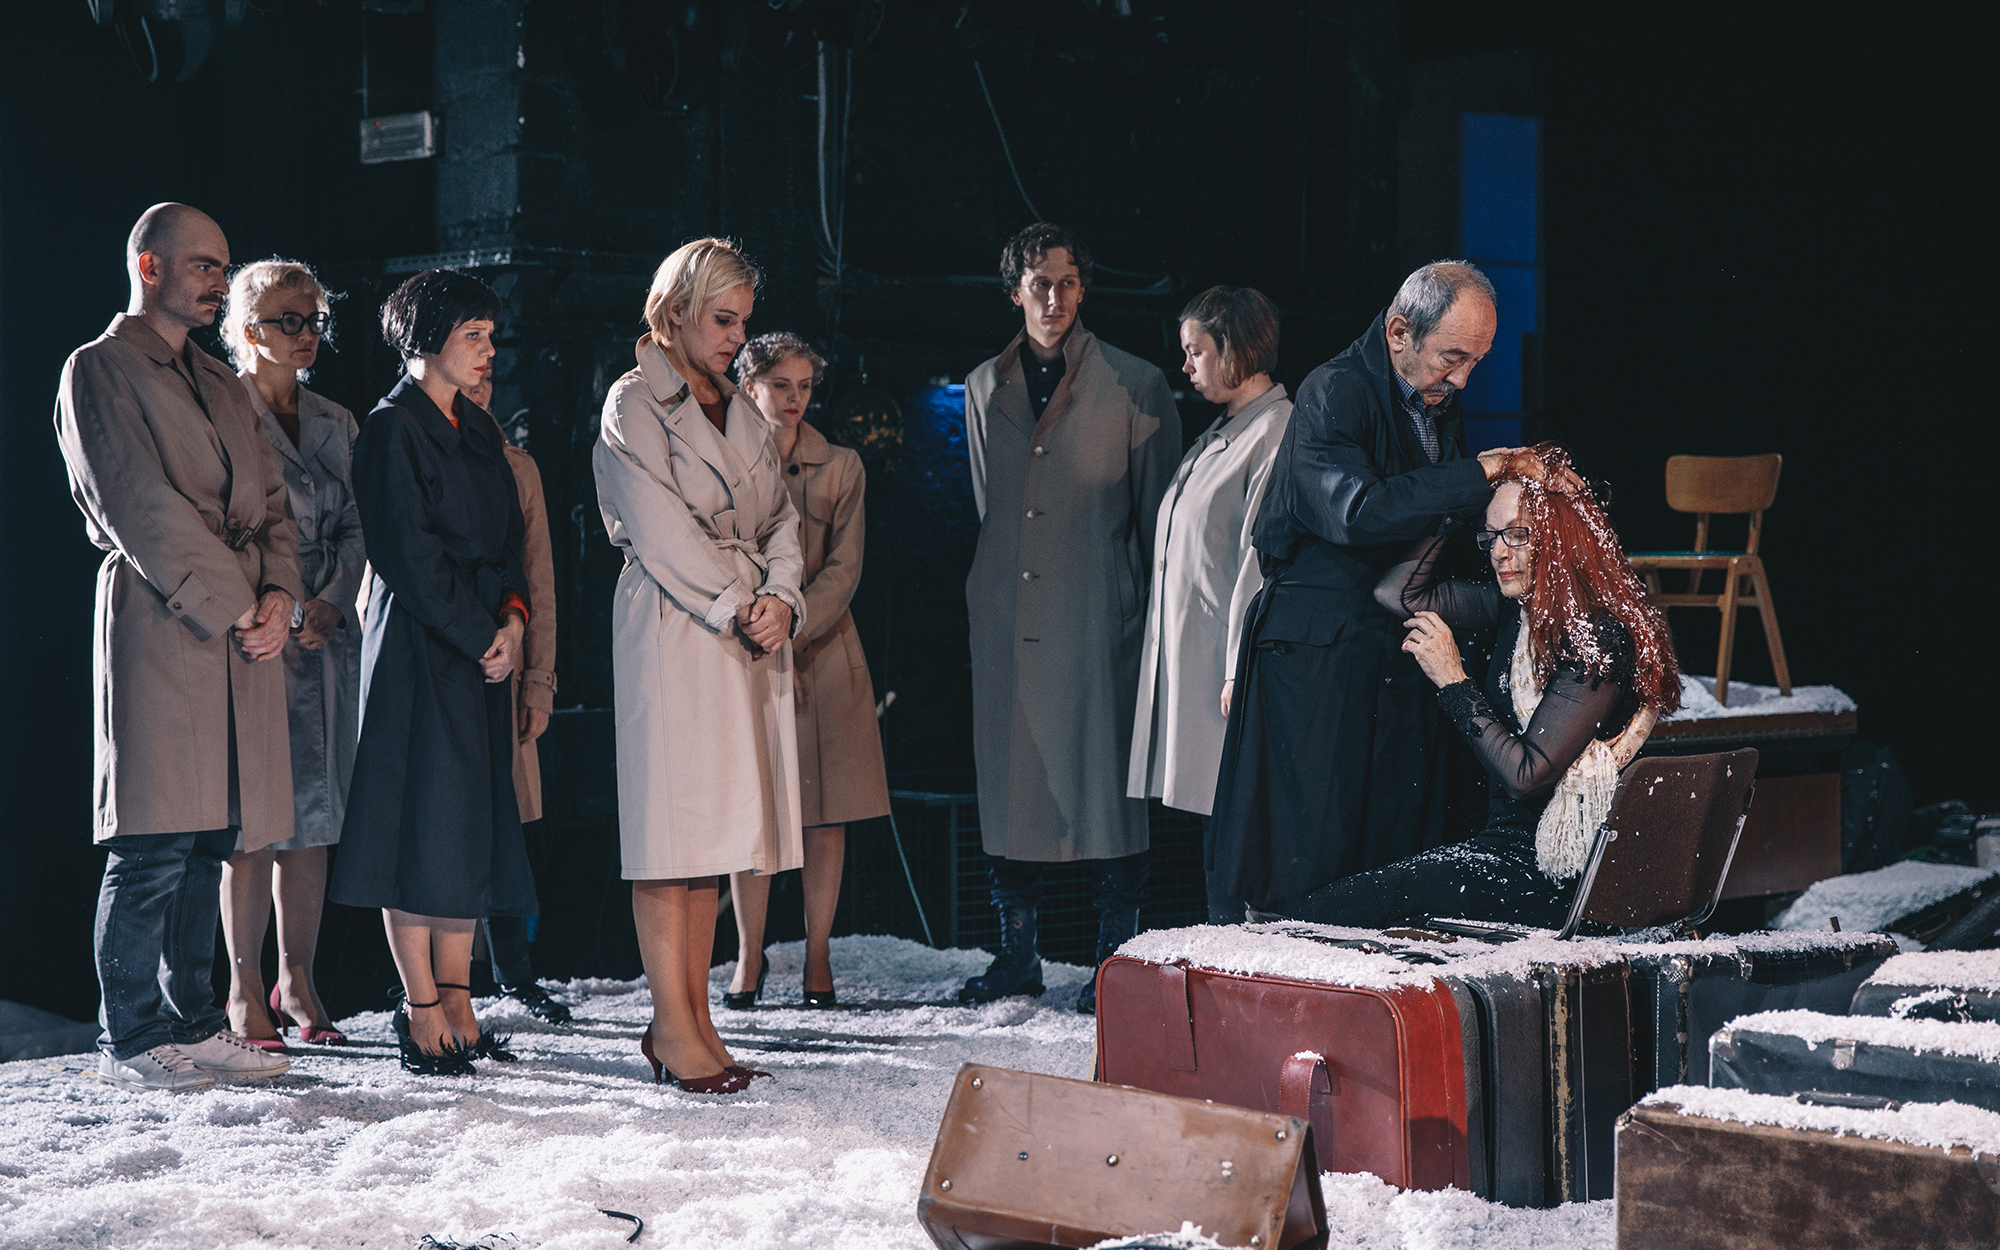 Oliver (Brane Grubar) stoji ob Clari (Jožica Avbelj) in jo boža po glavi. Ona sedi ob kupu kovčkov, z glave ji pada sneg. Za njima skoraj v vrsti molče stojijo Olga (Sara Dirnbek), Blue (Jurij Drevenšek), Brenda (Lena Hribar), Anja (Karin Komljanec), Žana